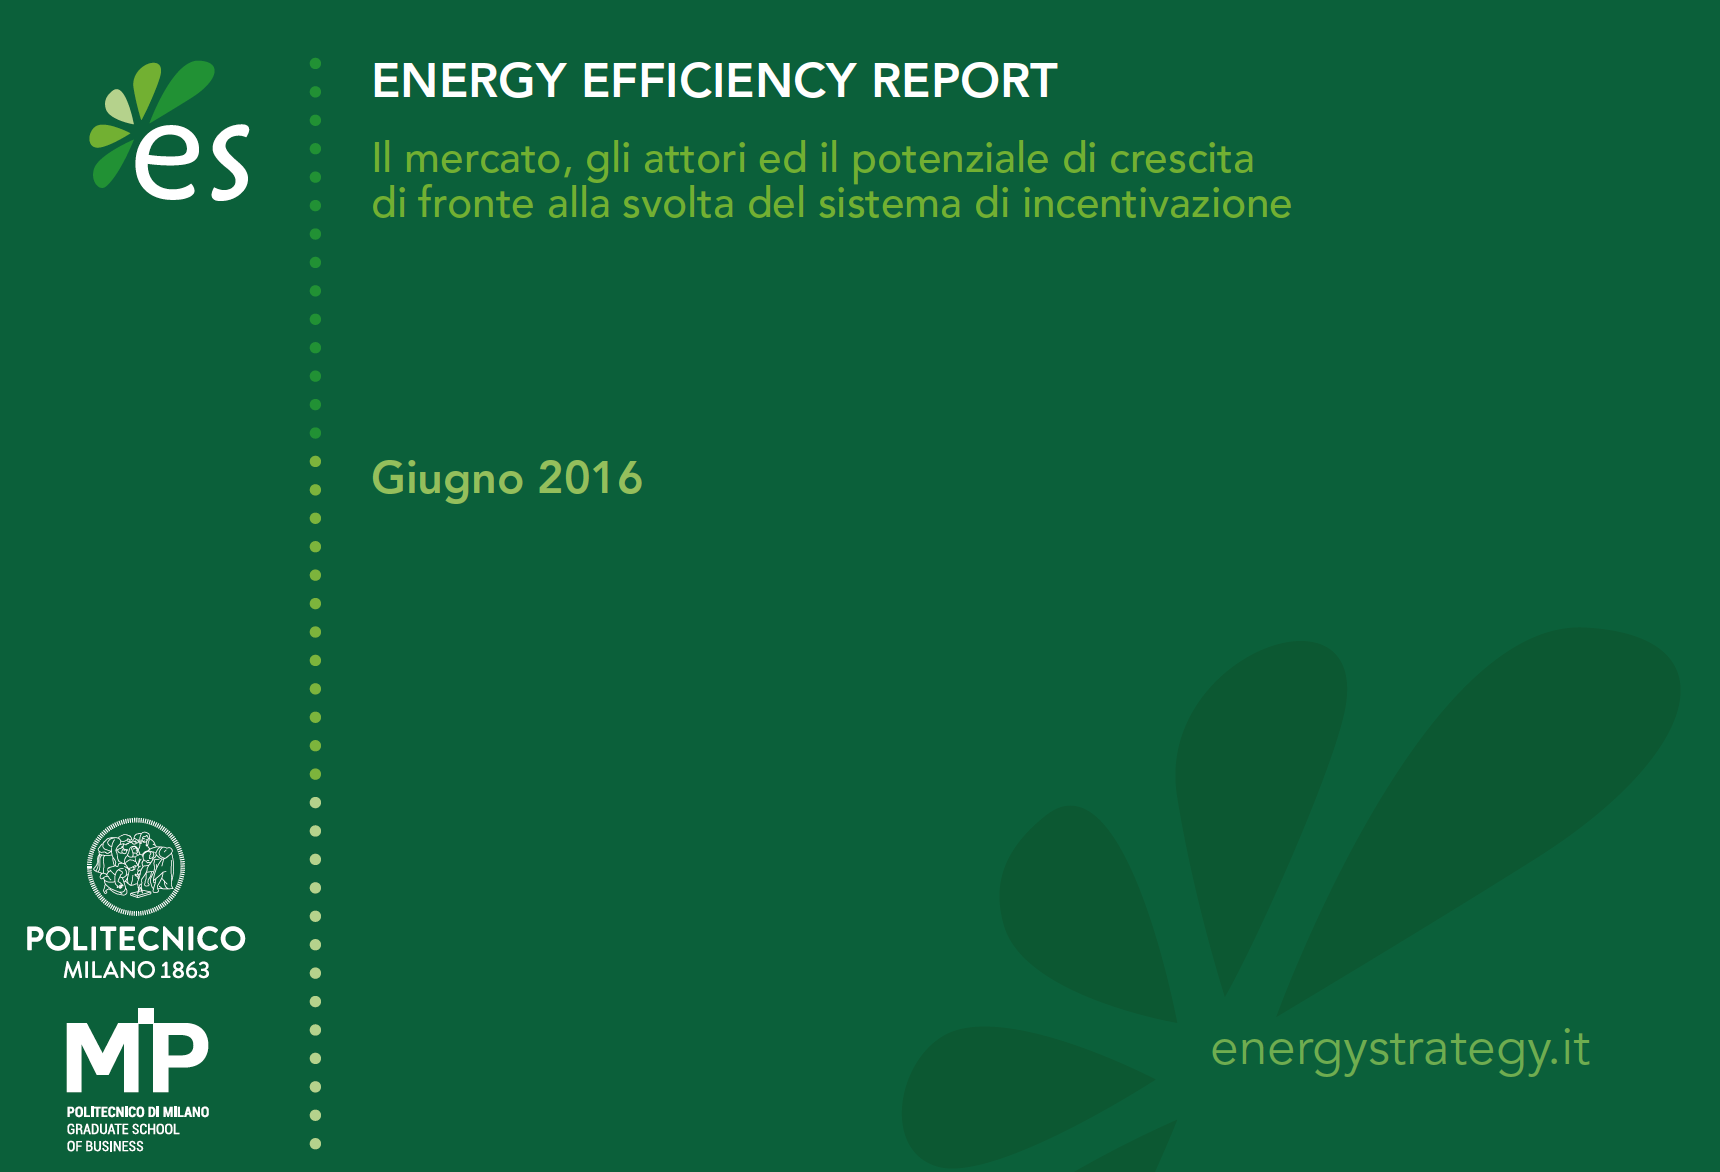 Efficienza energetica: il settore industriale investe oltre 1,7 miliardi di Euro